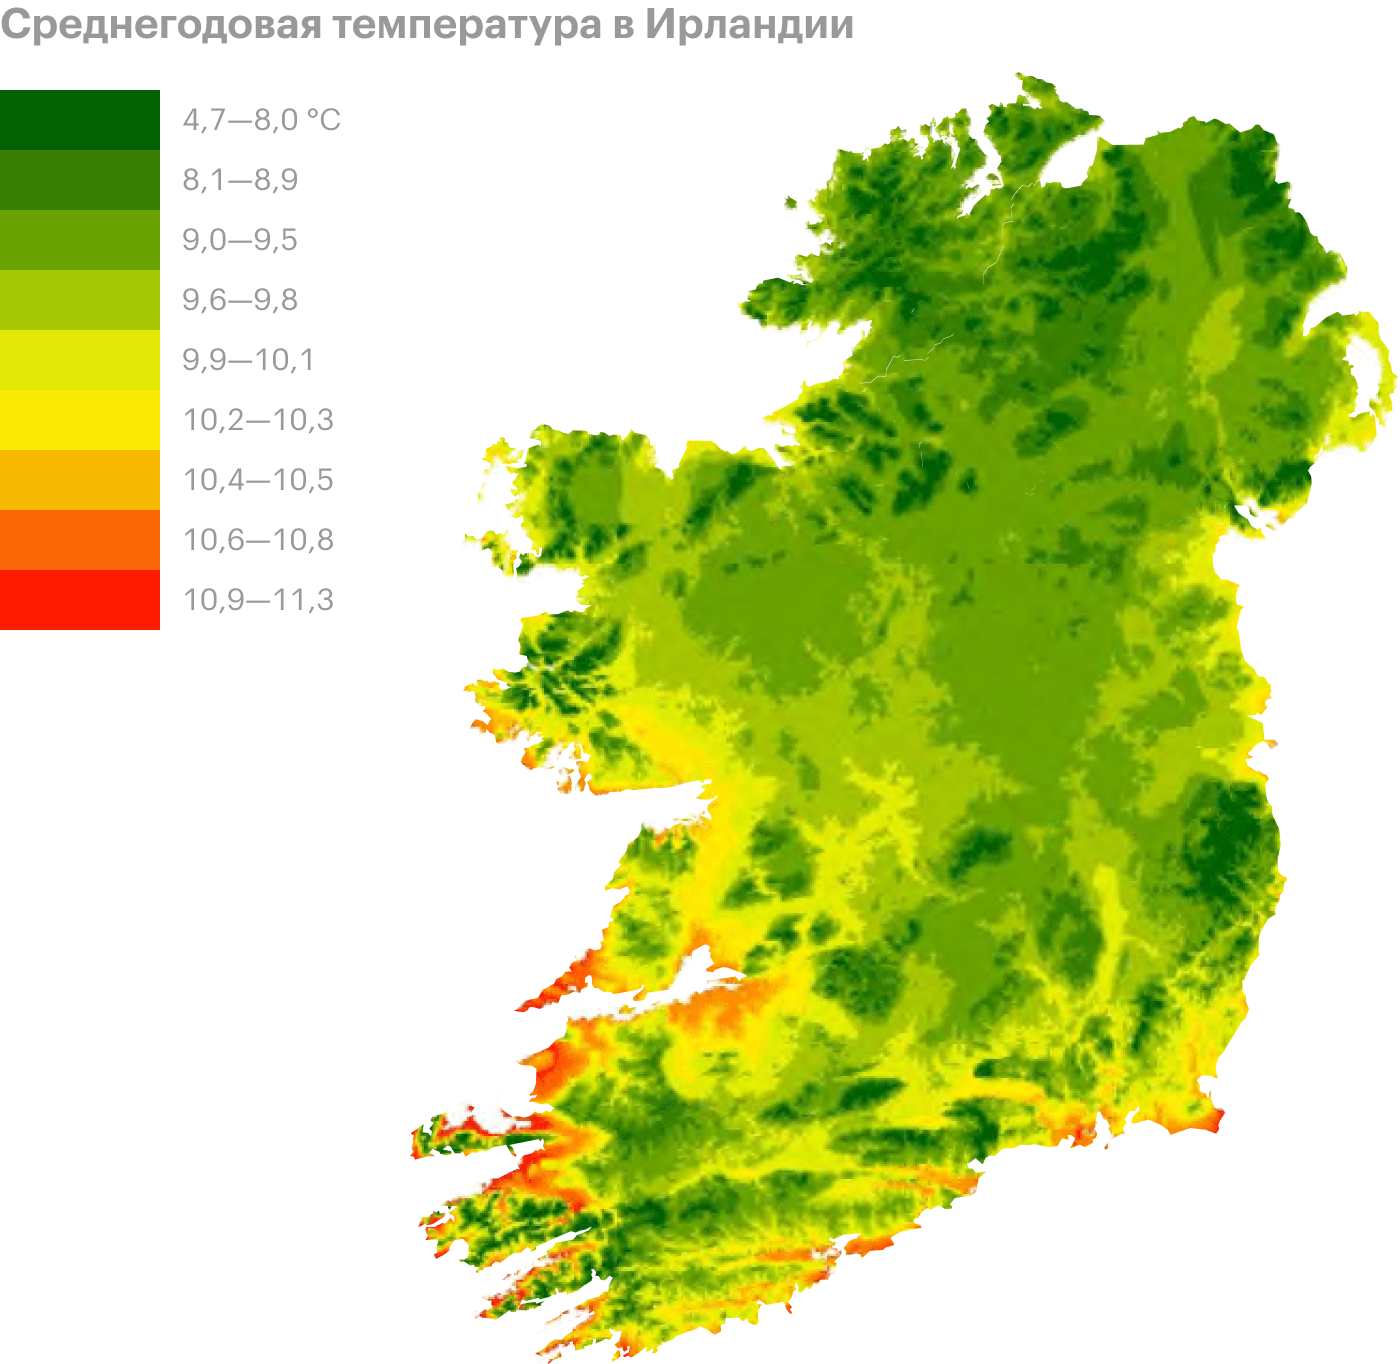 Карта среднегодовой температуры в Ирландии. Источник: researchegate.net